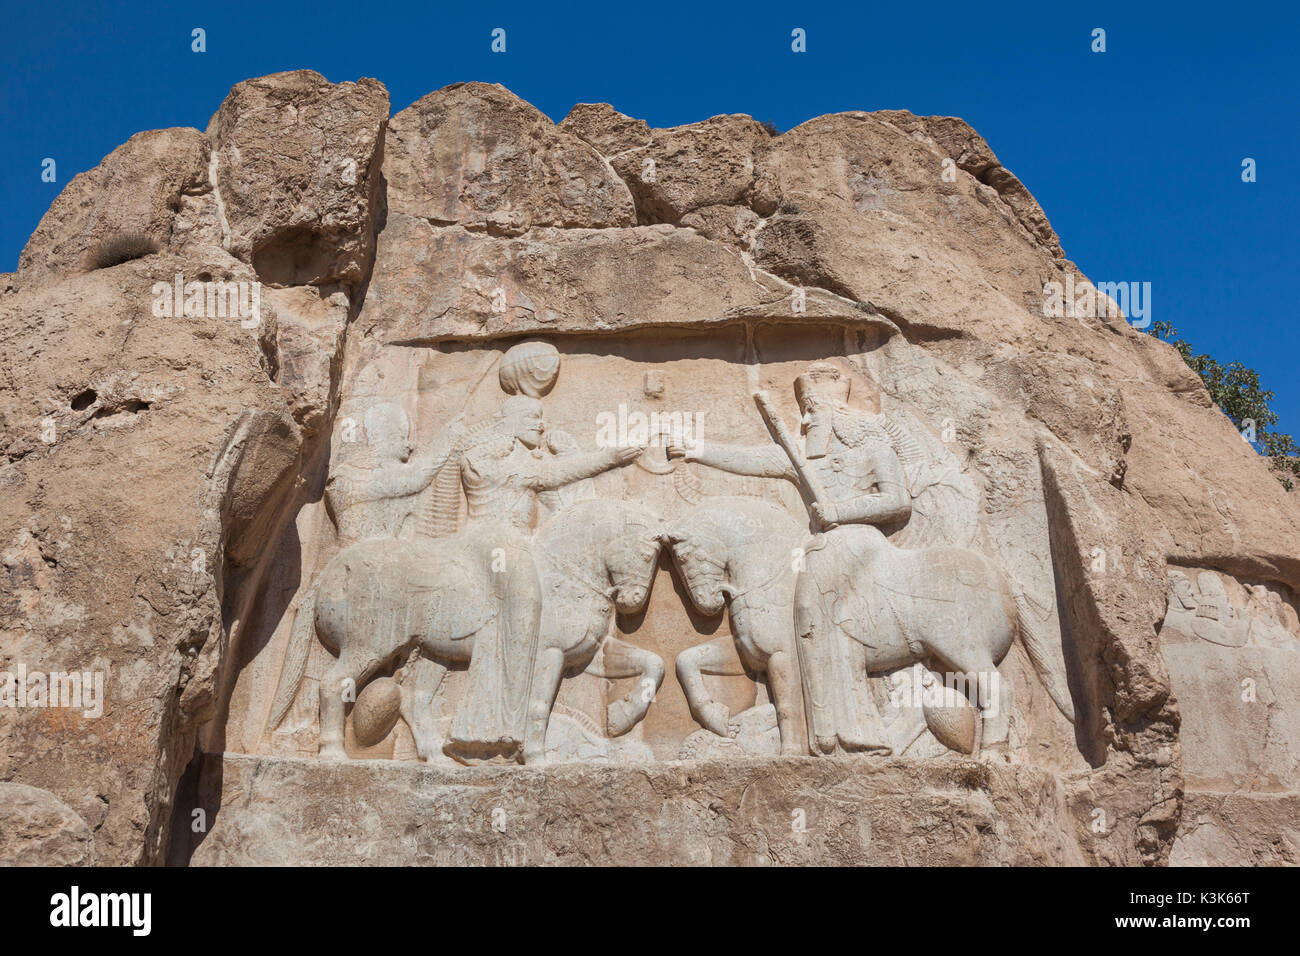 Iran, Central Iran, Shiraz, Naqsh-e Rostam, Sassanian stone reliefs cut into mountain Stock Photo